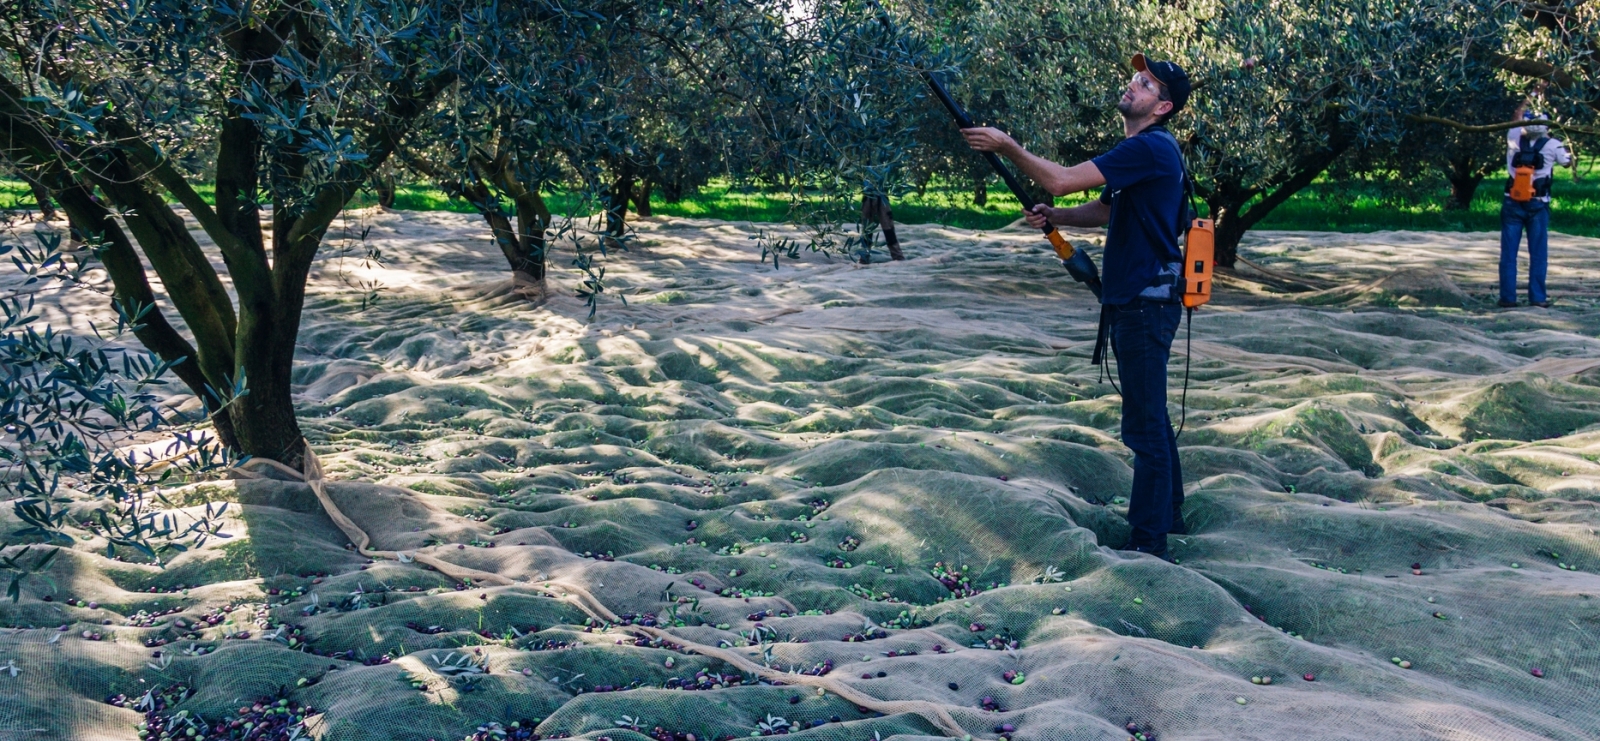 Récolte - Domaine de l'olivette